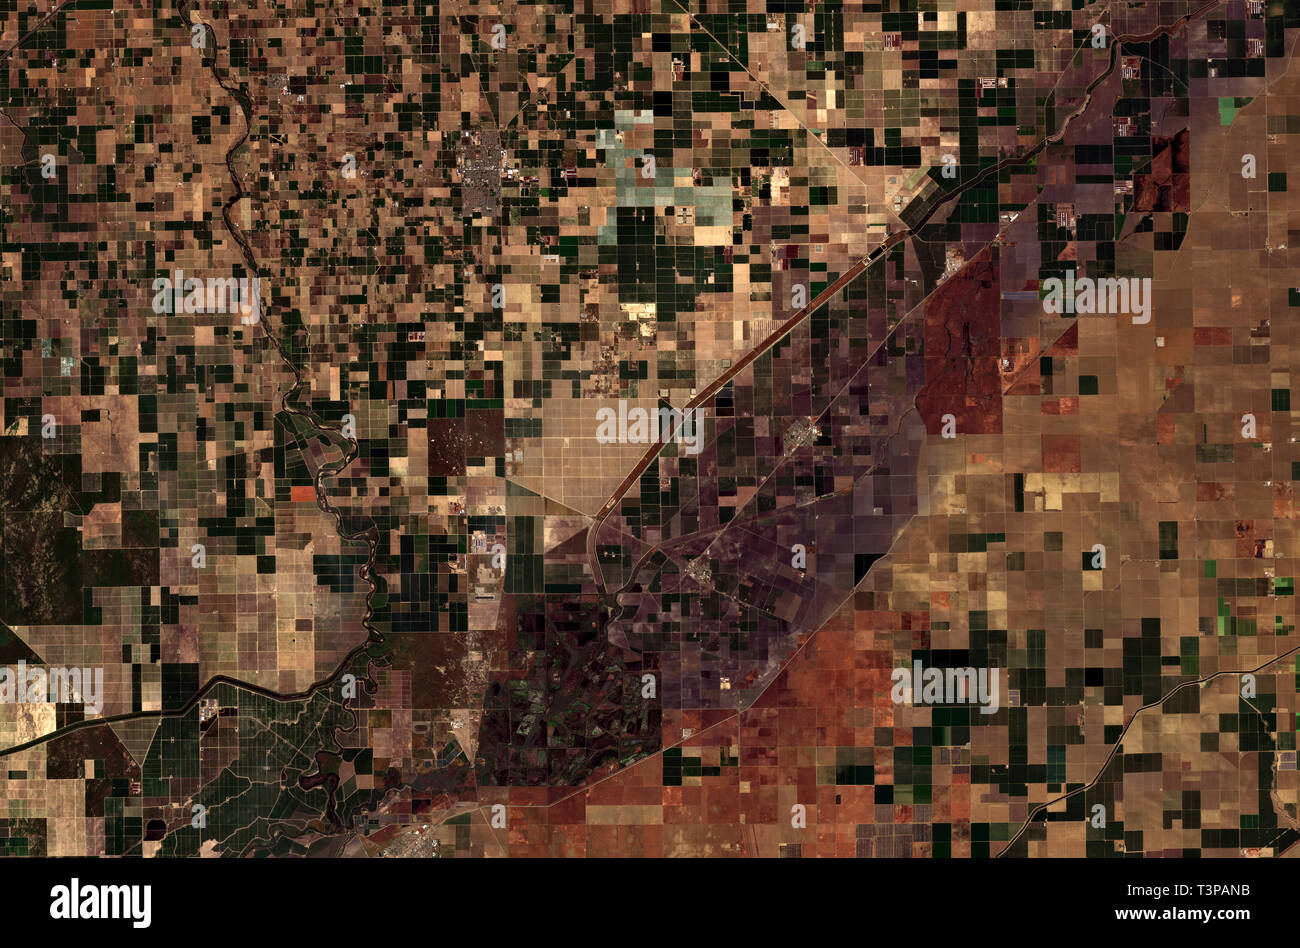 La vie agricole dans la vallée de San Joaquin en Californie vue de l'espace - contient des données Sentinel Copernicus modifiés (2019) Banque D'Images